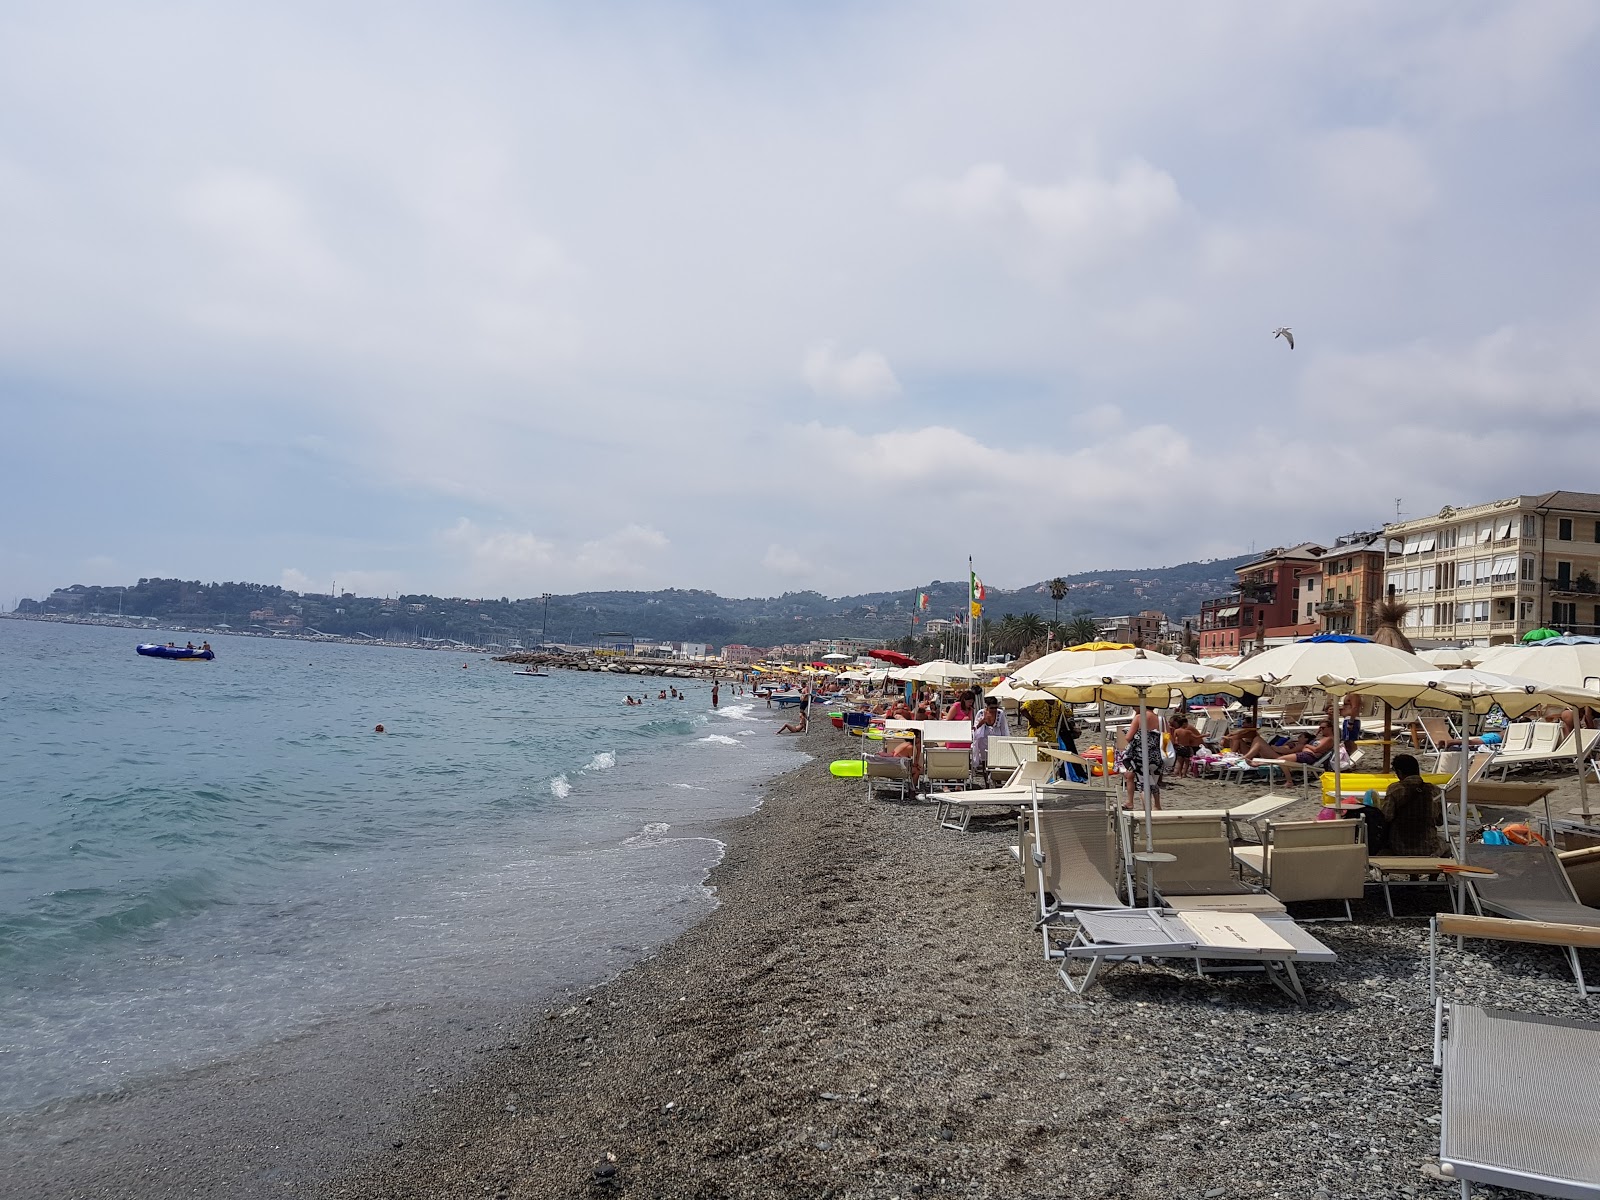 Zdjęcie Spiaggia Varazze - popularne miejsce wśród znawców relaksu